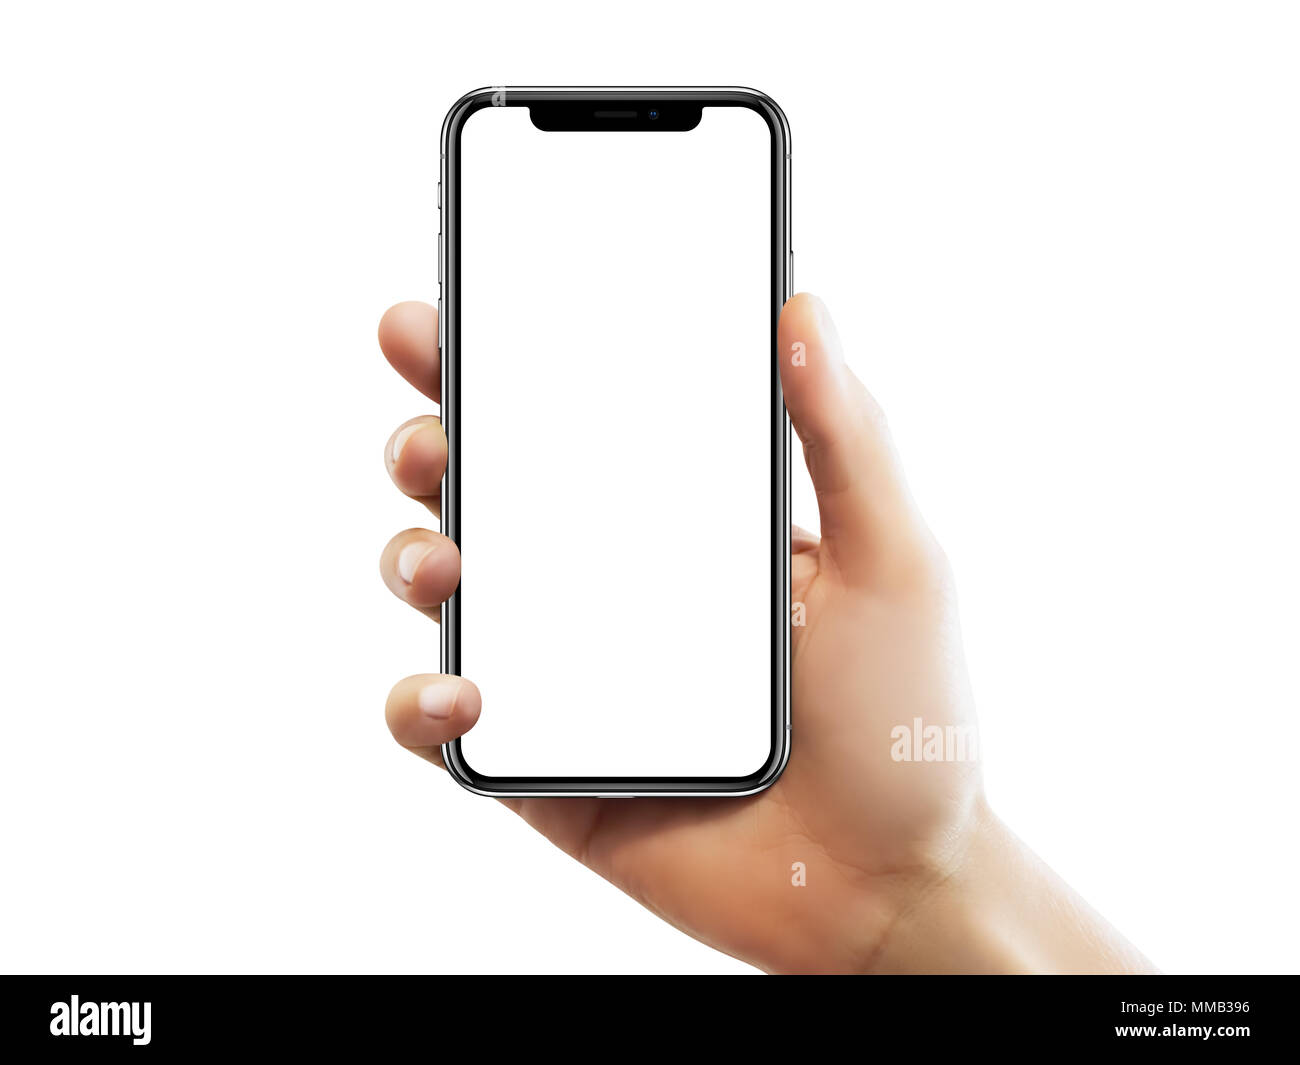 ISTANBUL - 10. MAI 2018: Apple iPhone X Bildschirm mit leeren Bildschirm  Holding durch eine weibliche Hand gegen isoliert weißer Hintergrund  Stockfotografie - Alamy